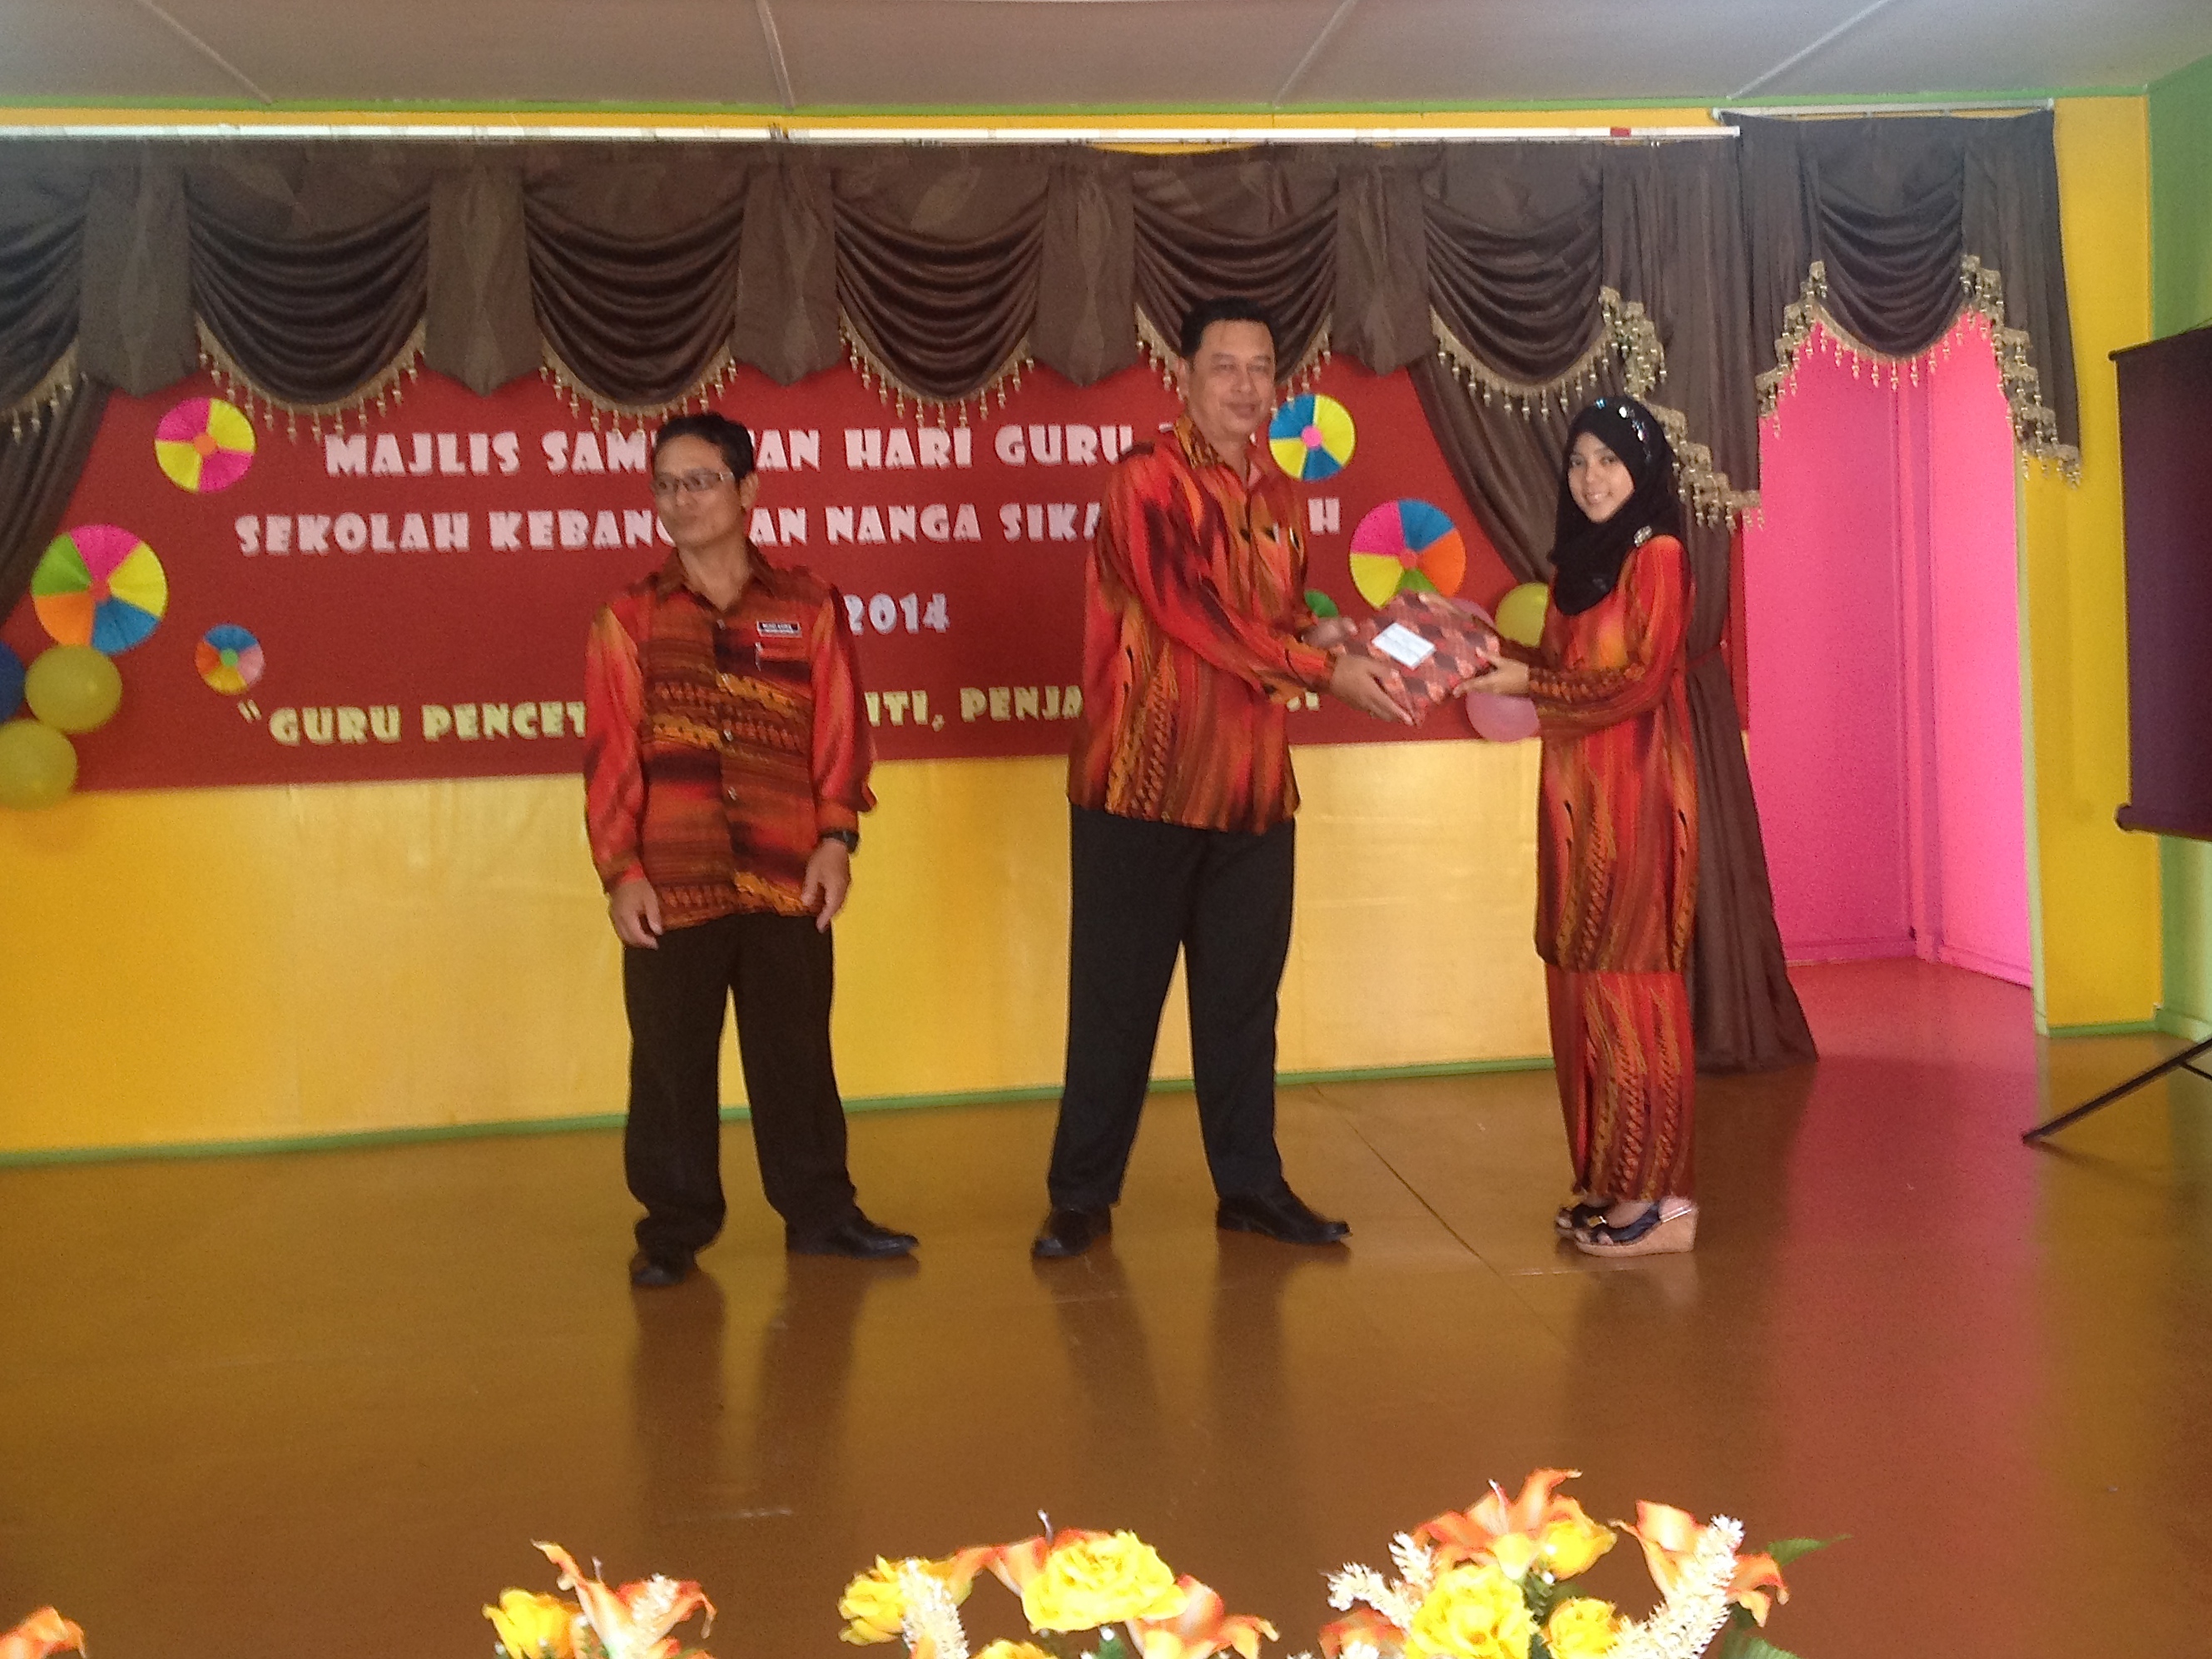 Sambutan Hari Guru 2014  Portal SK Nanga Sikat